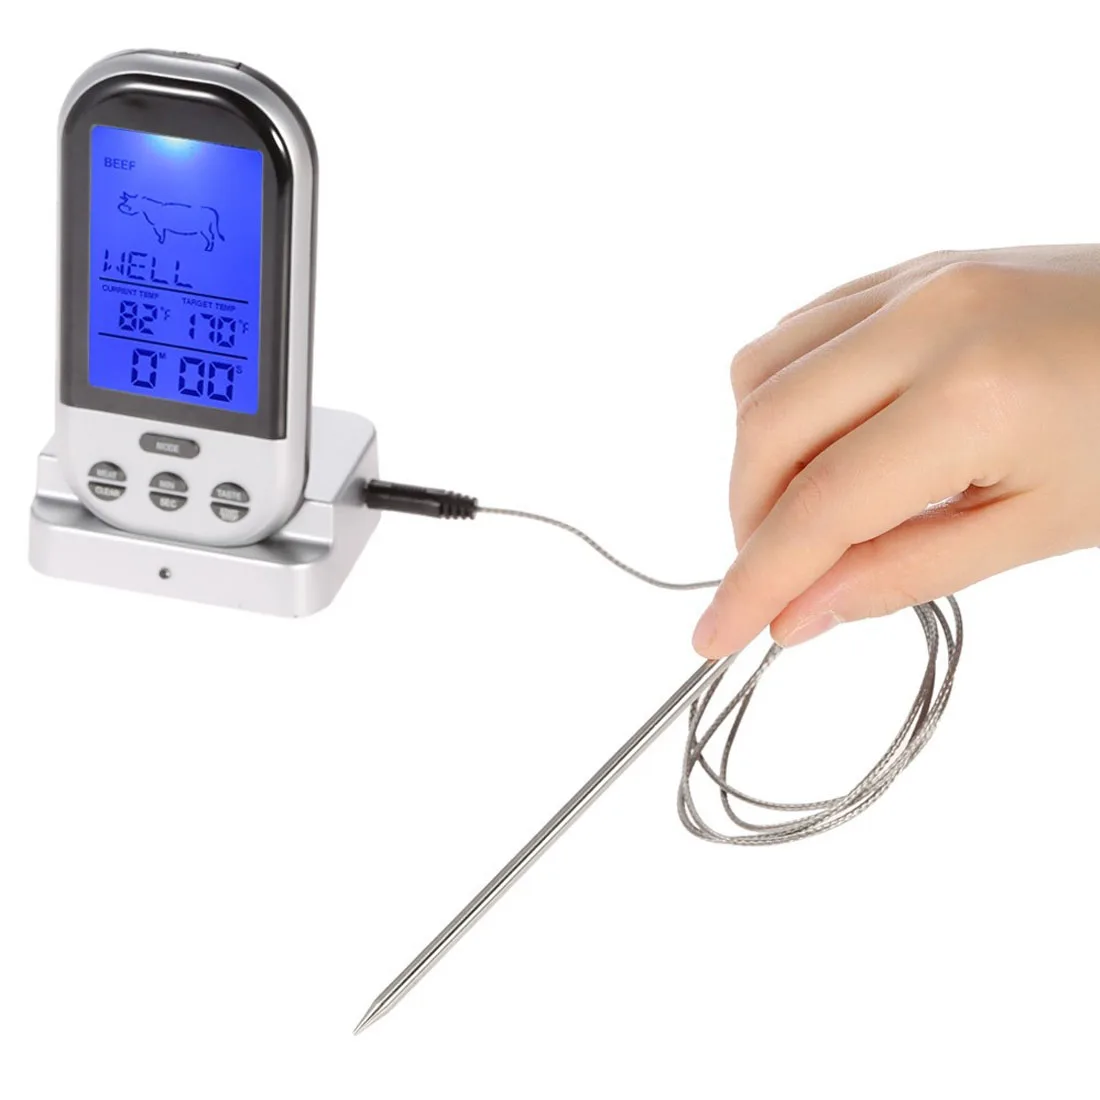 Цифровой беспроводной термометр для печи, мяса, барбекю, гриля, еды, зонд, Кухонный Термометр, инструменты для приготовления пищи с таймером, сигнализацией